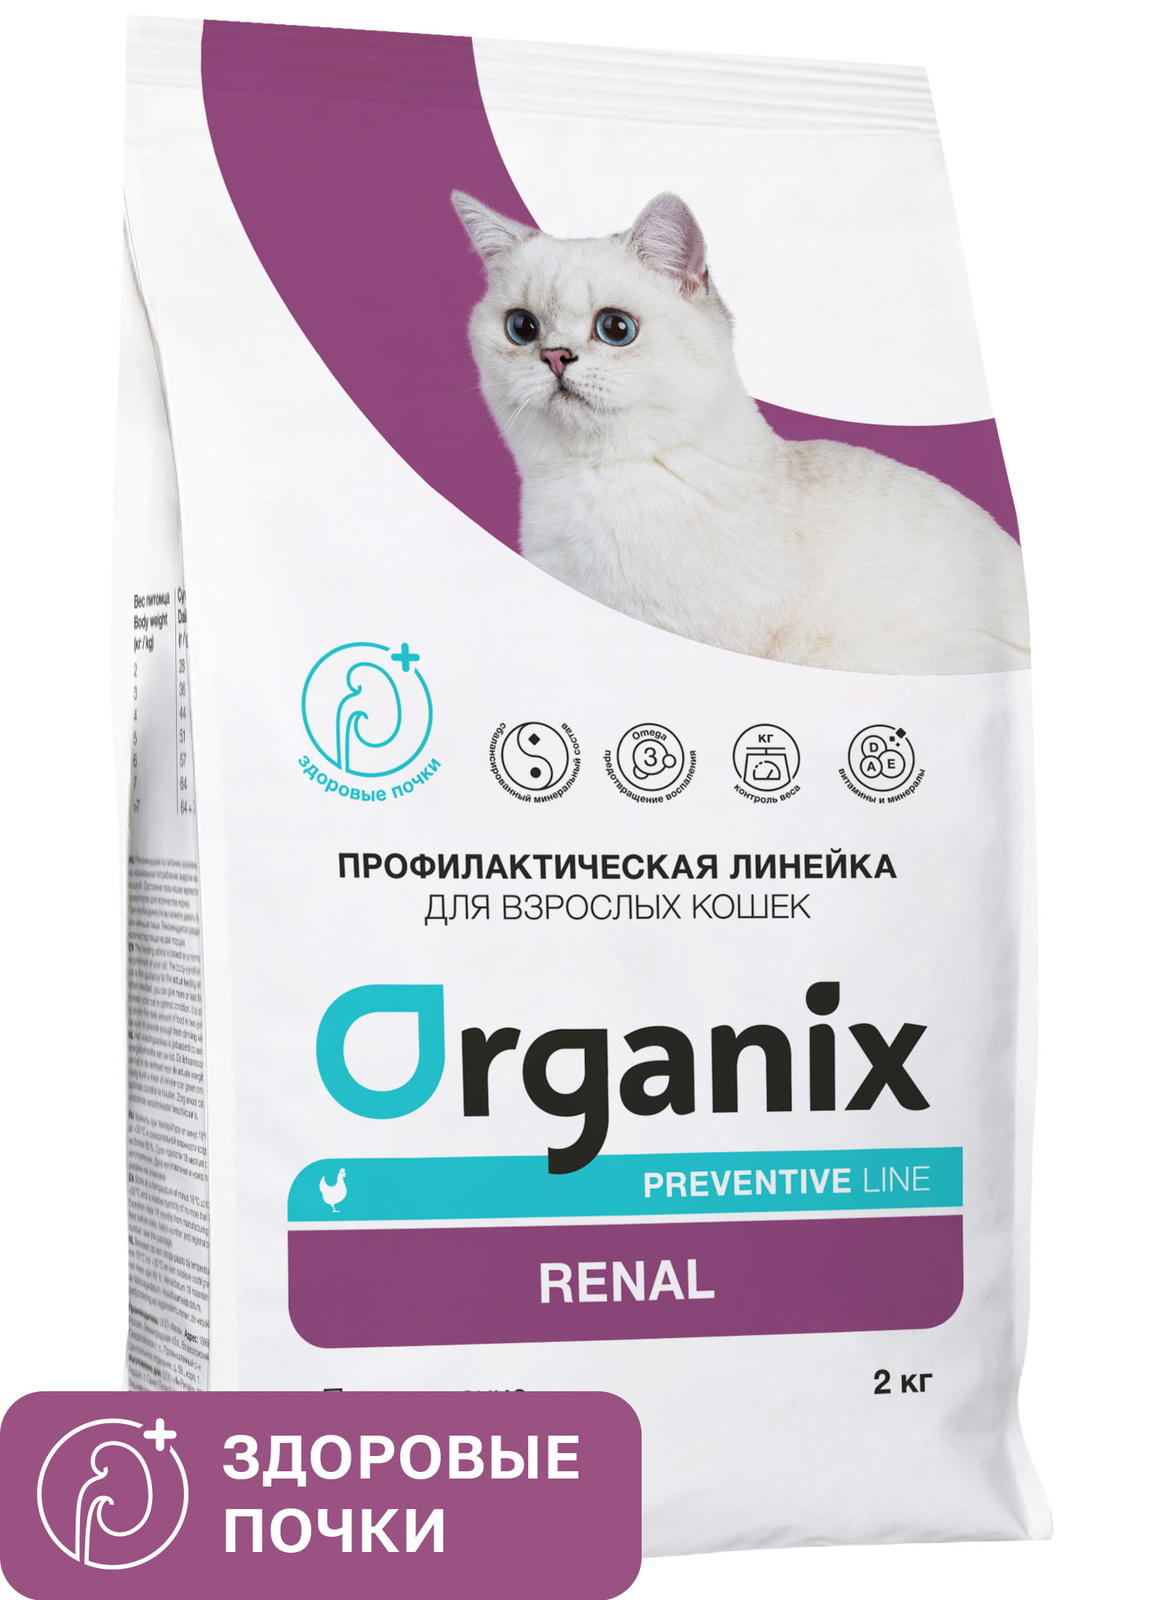 Organix Preventive Line Organix Preventive Line renal сухой корм для кошек Поддержание здоровья почек (2 кг) фото